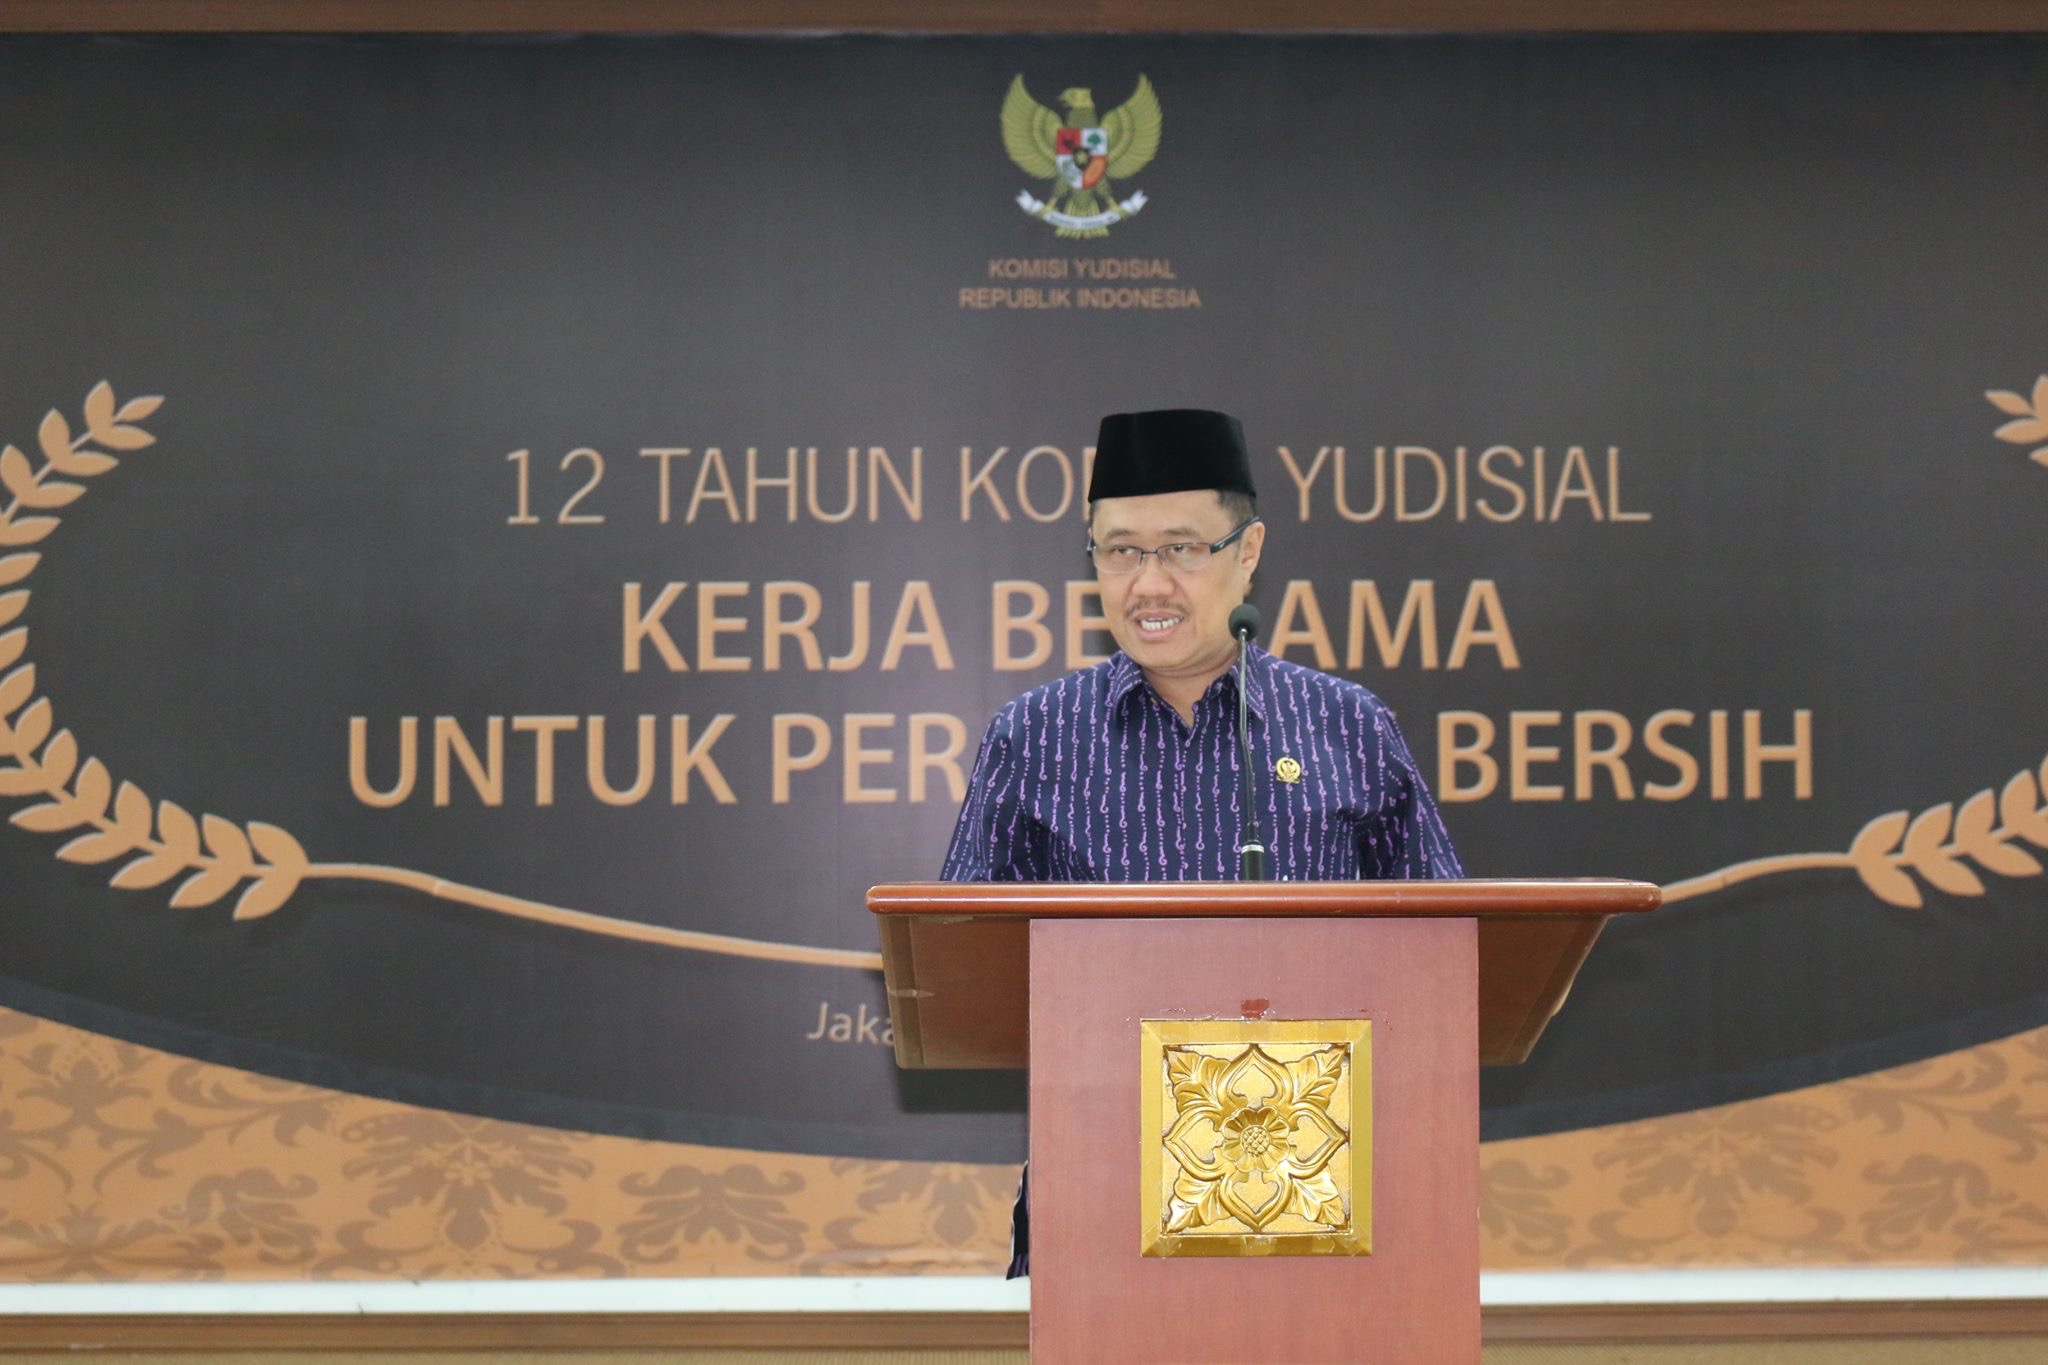 Ketua KY Aidul Fitriciada Azhari saat menyampaikan sambutan di acara HUT KY ke-12, Rabu (23/8) di Gedung KY Jakarta. Foto: Humas KY